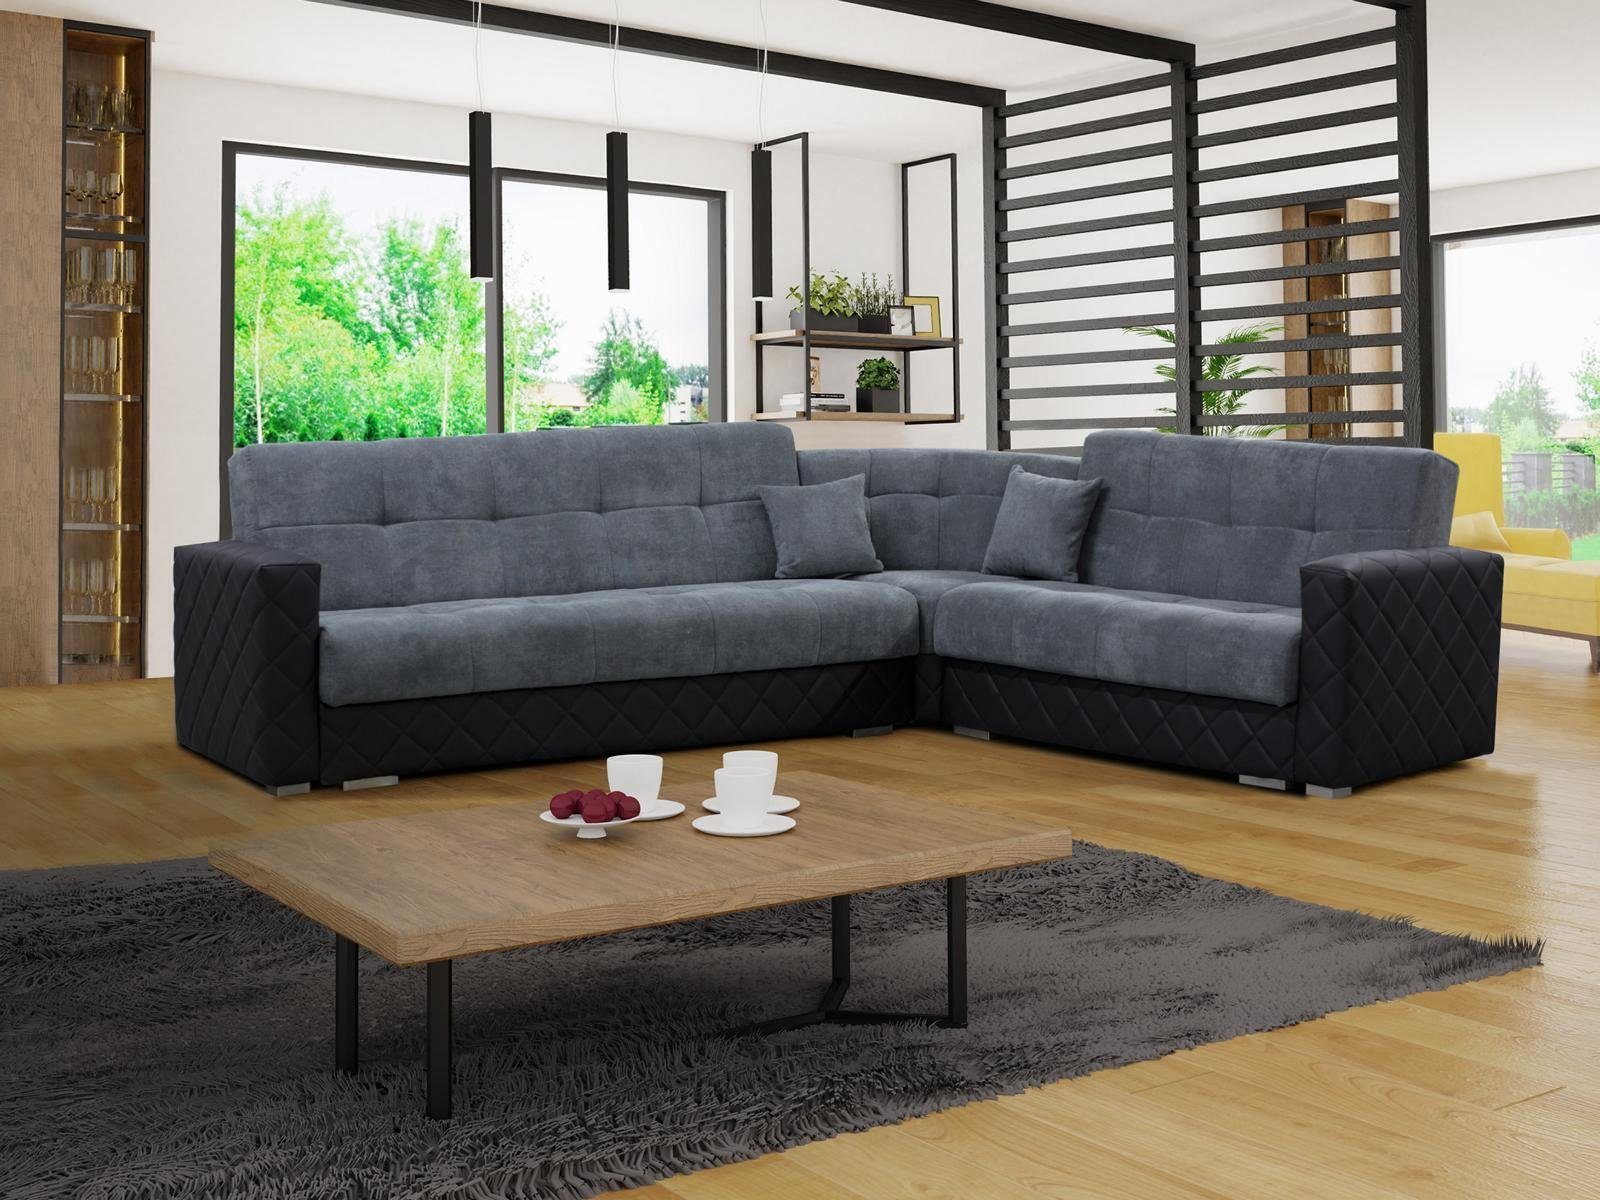 JVmoebel Ecksofa, Luxus Textil L Form Stoff Modern Ecken Couch Sofa  Wohnlandschaft